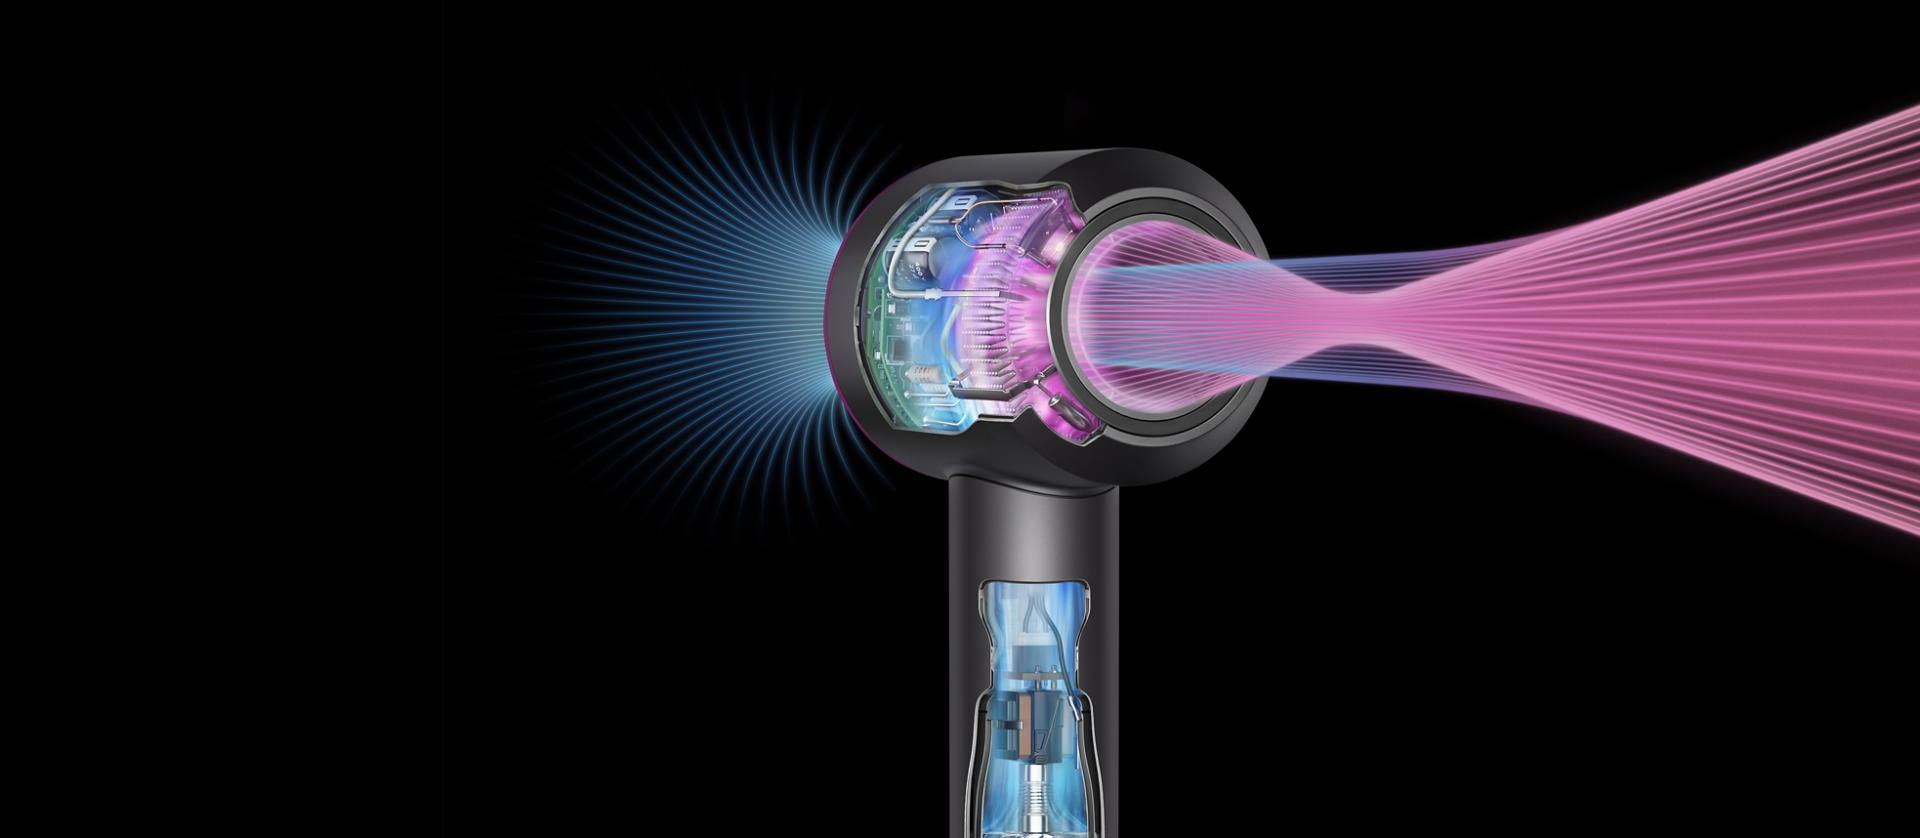 Przekrój ukazujący technologię wewnątrz suszarki Dyson Supersonic